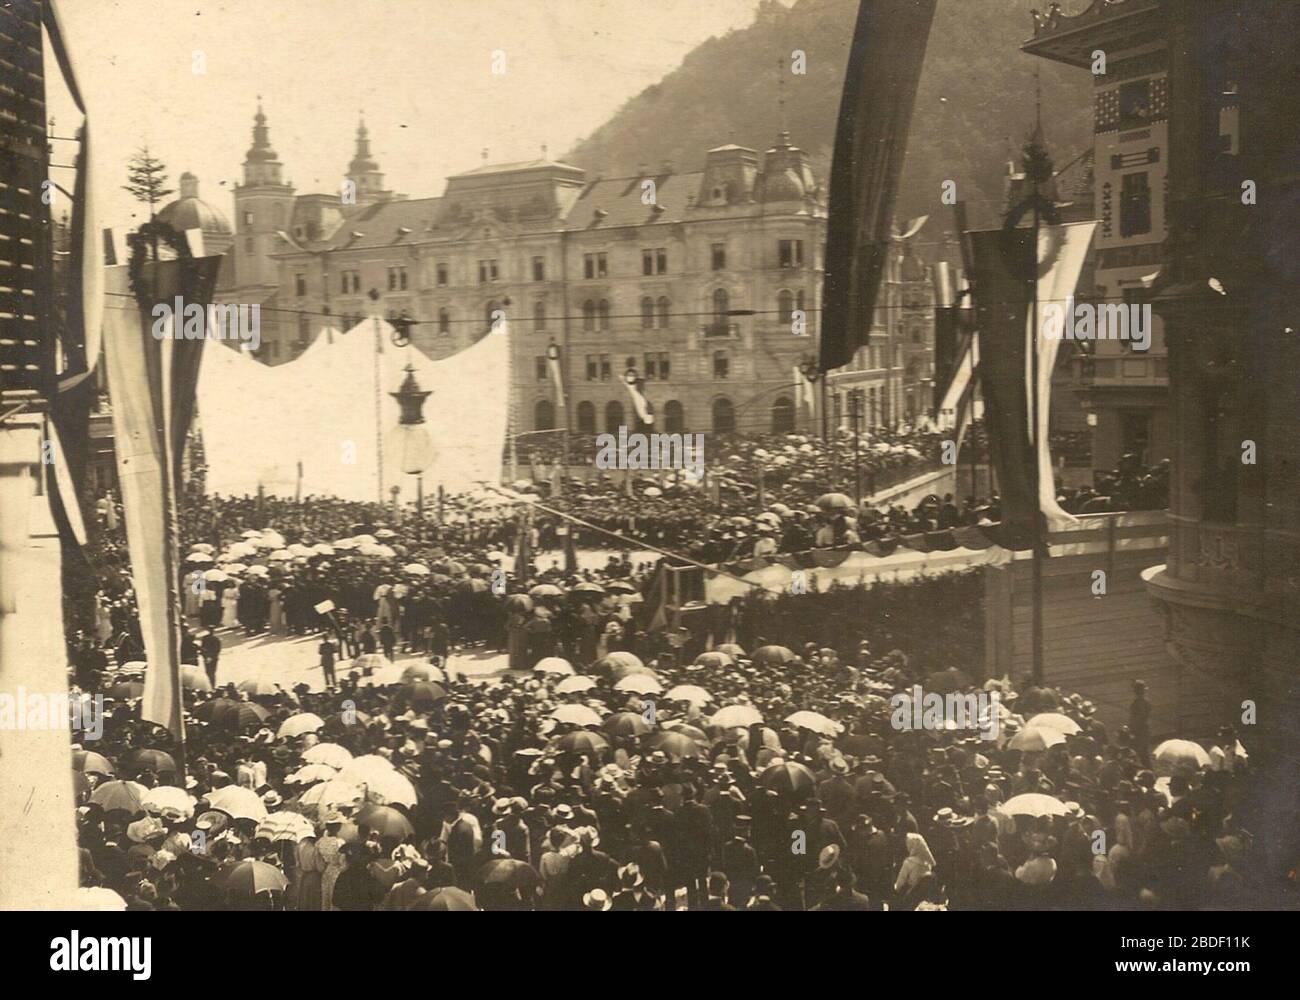 'Slovenščina: Ljubljana - odkritje spomenika Francetu Prešernu, 10. 9. 1905.; 10 September 1905; http://www.starerazglednice.si/post/110433203826/ljubljana-odkritje-spomenika-francetu-presernu; Unknown author; ' Stock Photo